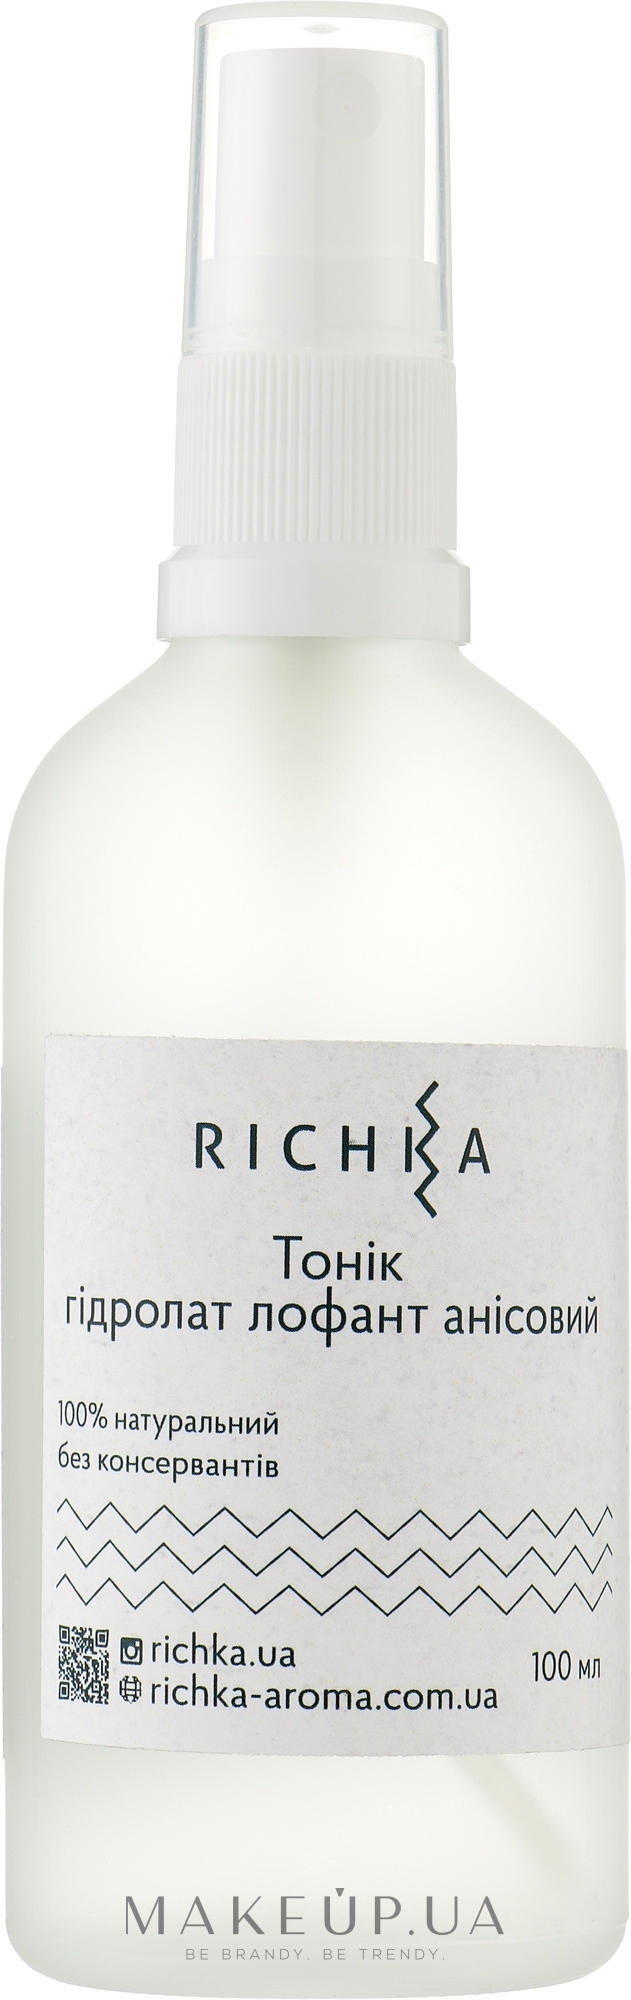 Тоник гидролат лофант анисовый - Richka Tonic Hydrolate — фото 100ml